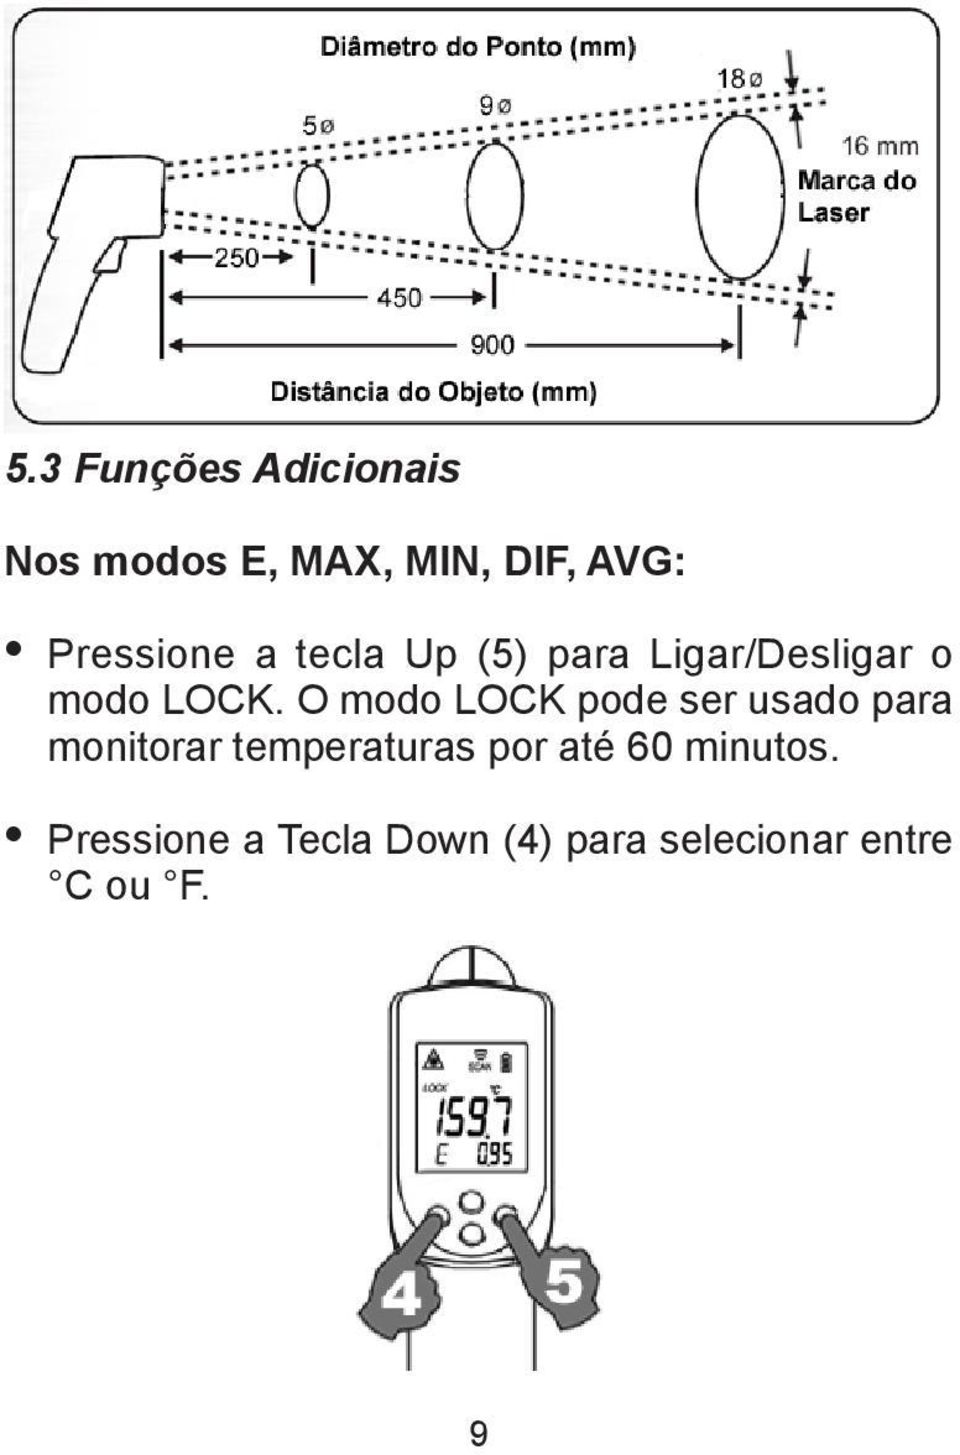 O modo LOCK pode ser usado para monitorar temperaturas por